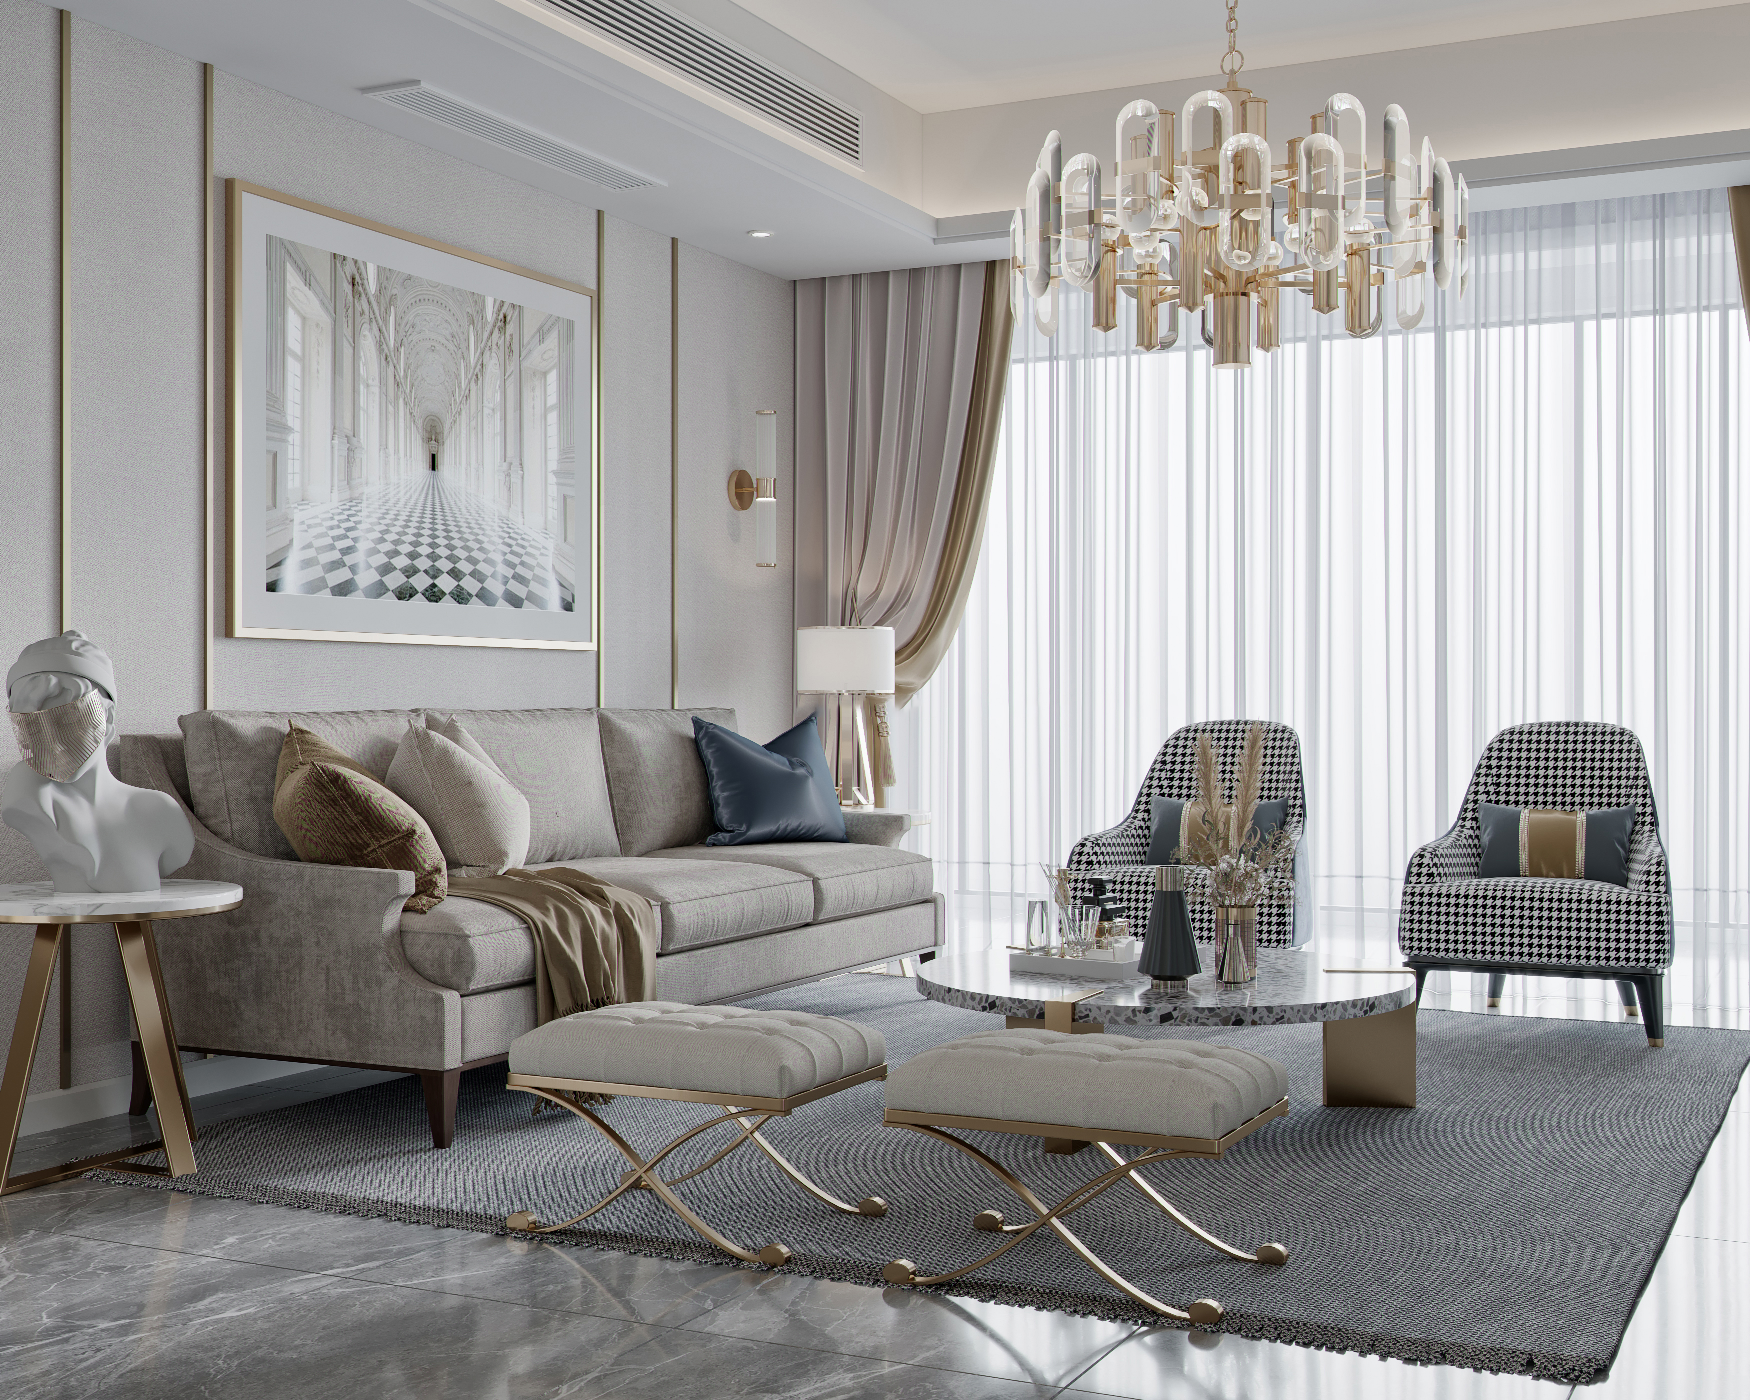 輕奢風的客廳設計中使用金屬元素覆蓋整個空問，精巧細緻的紋理細節給予室內高級而優雅的格調